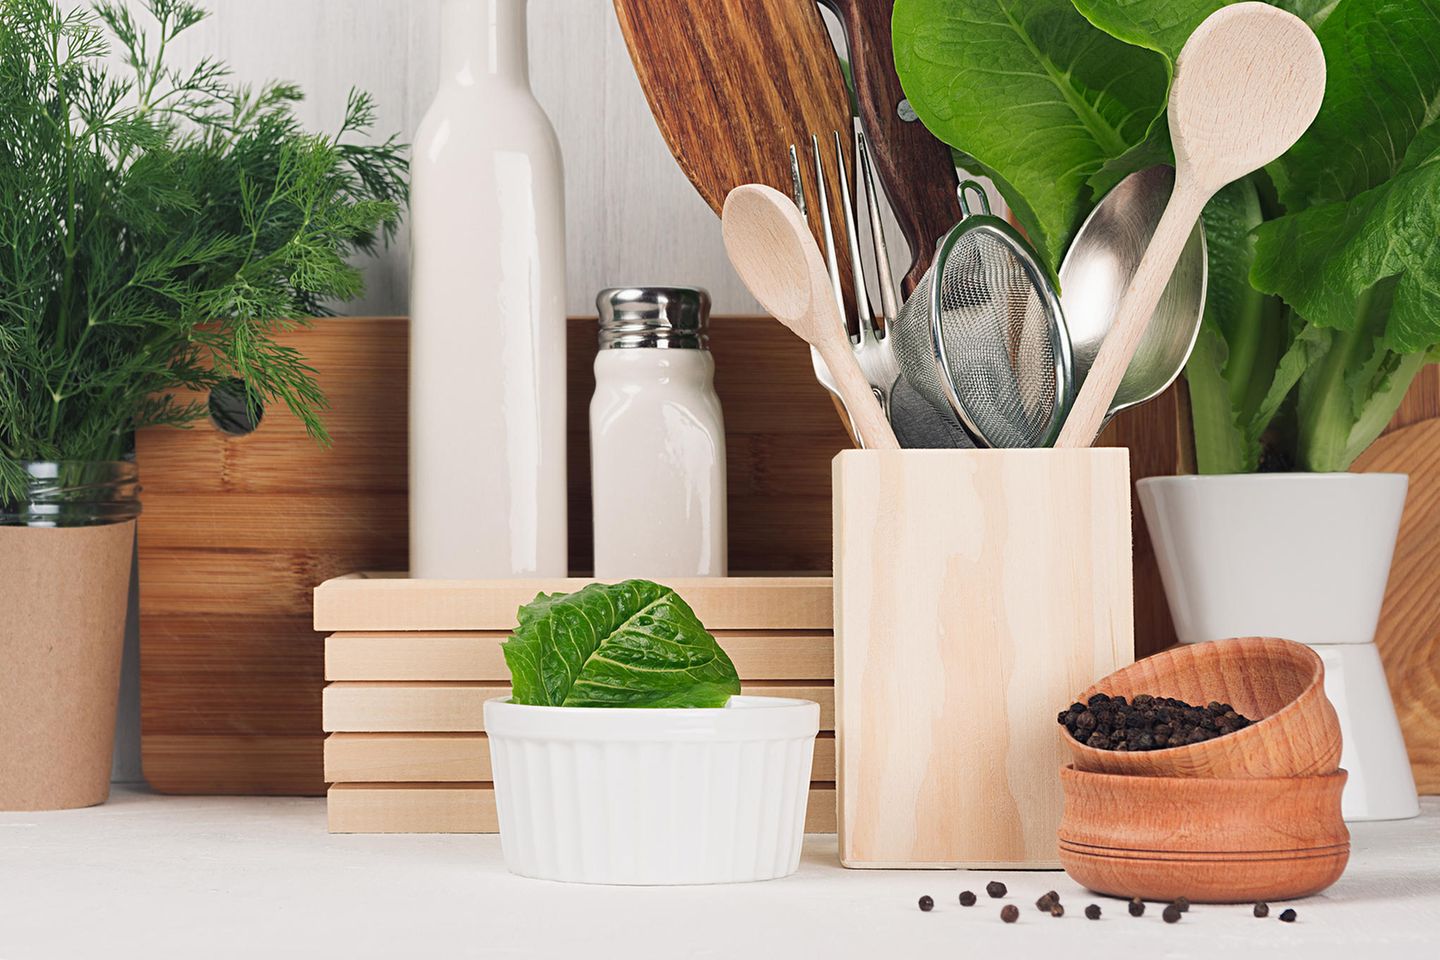 Nachhaltigkeit in der Küche, Nachhaltigkeit, plastikfrei in der Küche leben